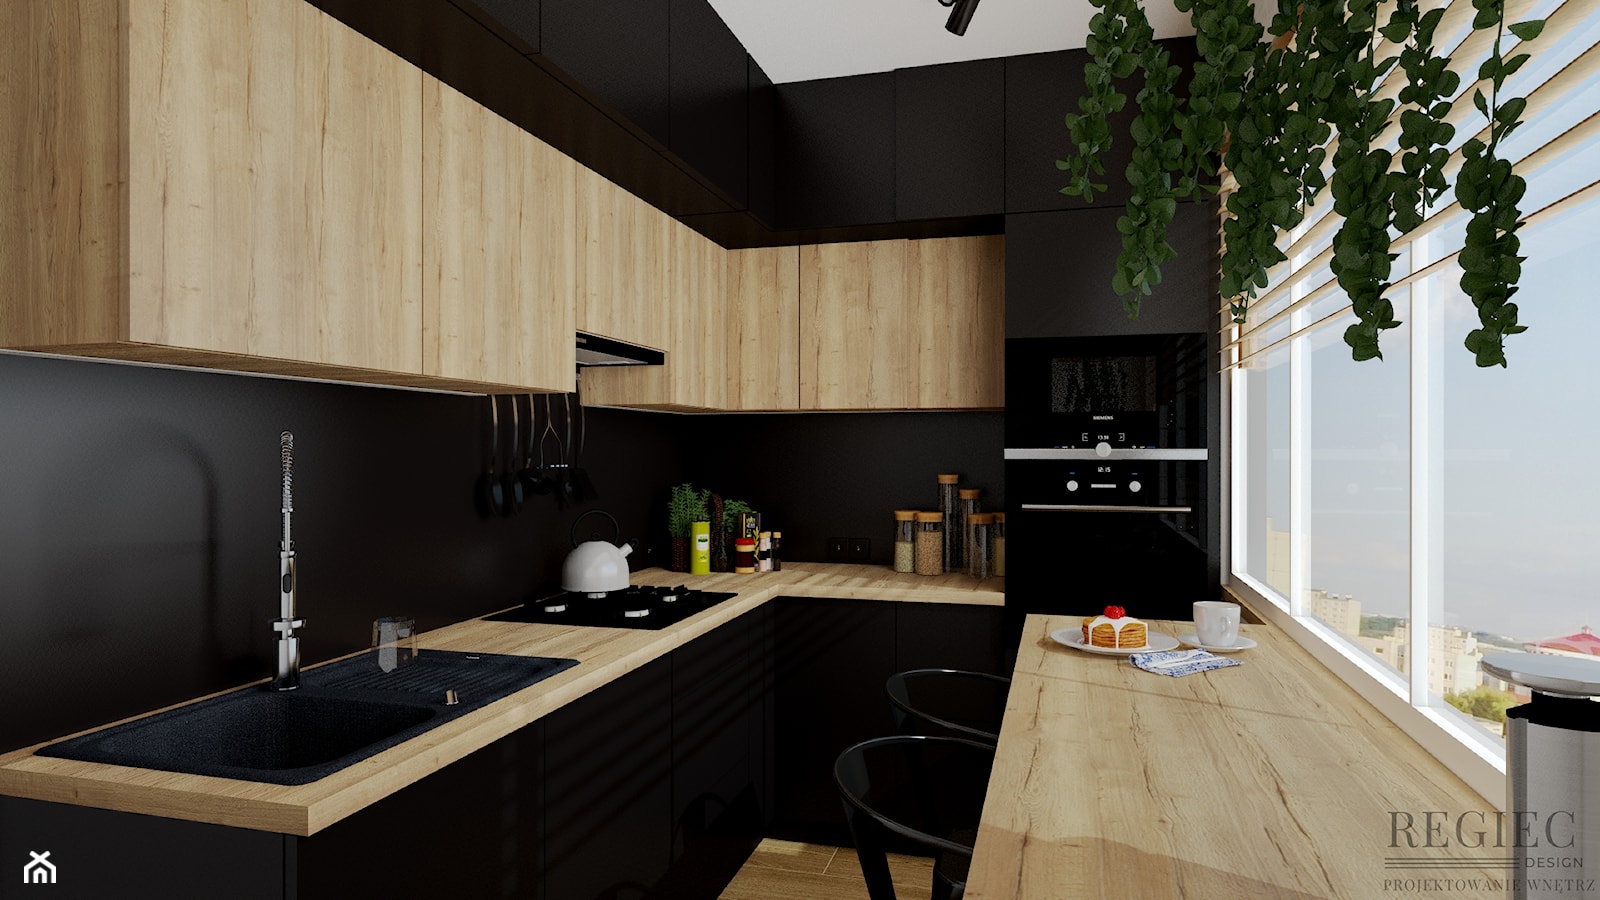 Kuchnia czerń i drewno - zdjęcie od Aleksandra Regiec - projektowanie wnętrz - Homebook